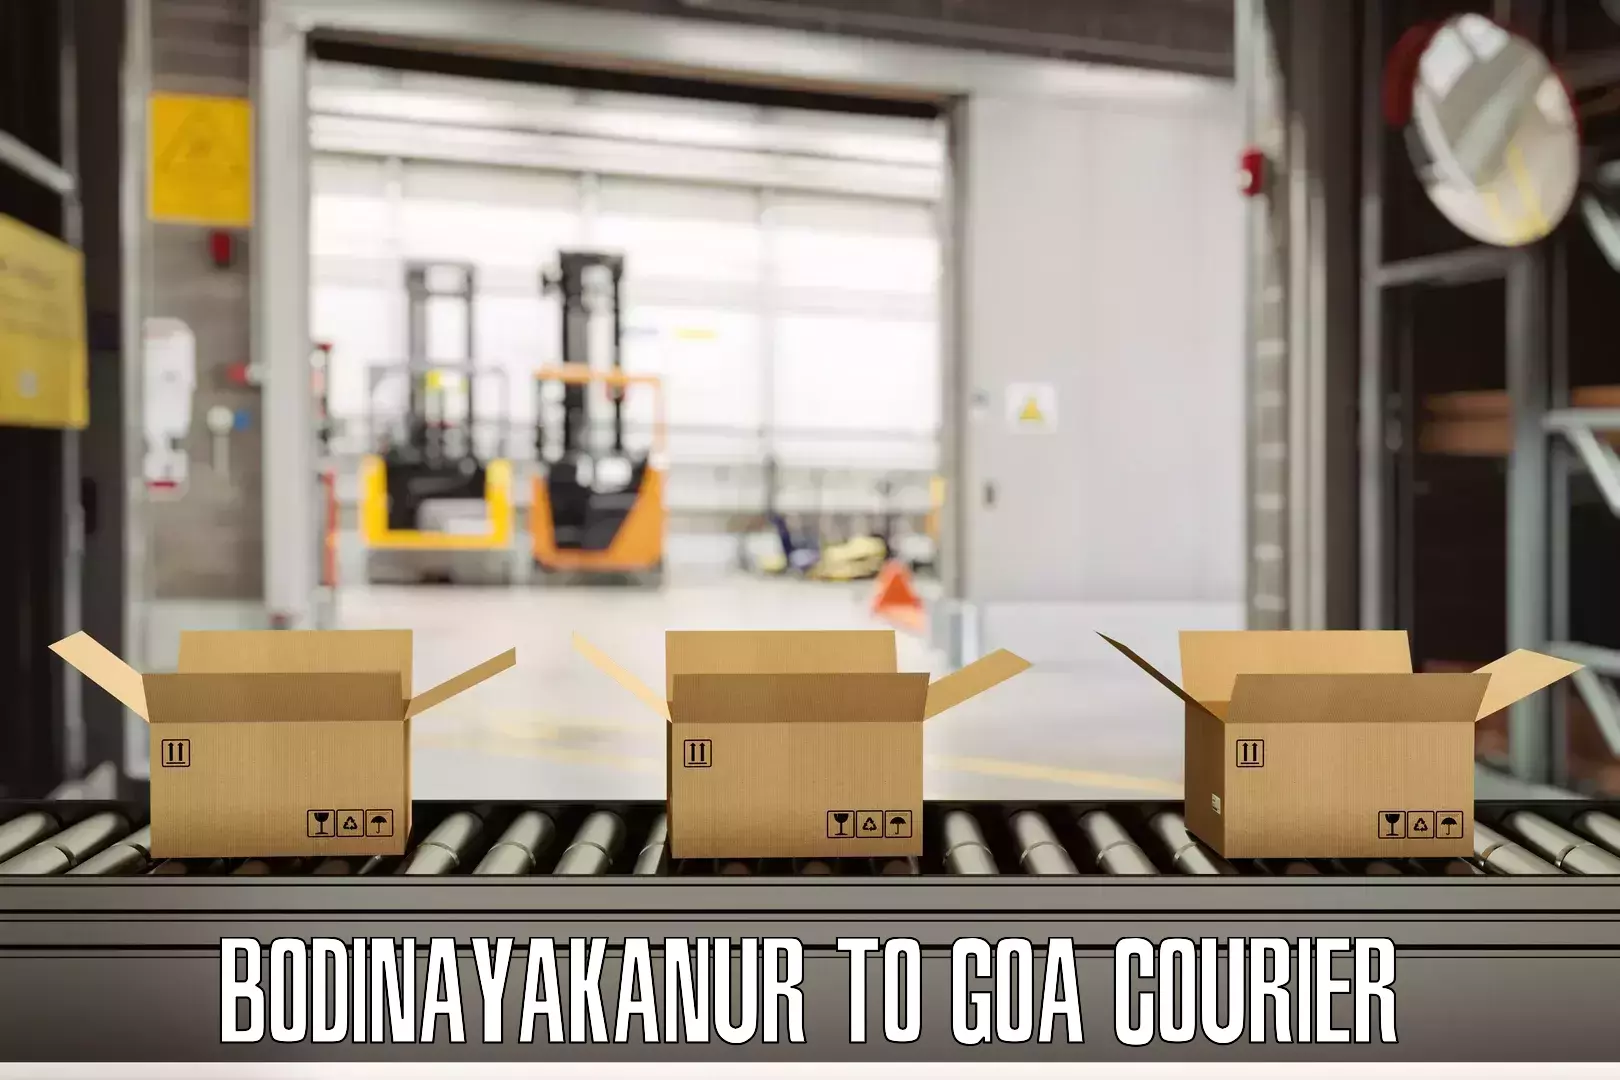 Door-to-door baggage service Bodinayakanur to Goa University